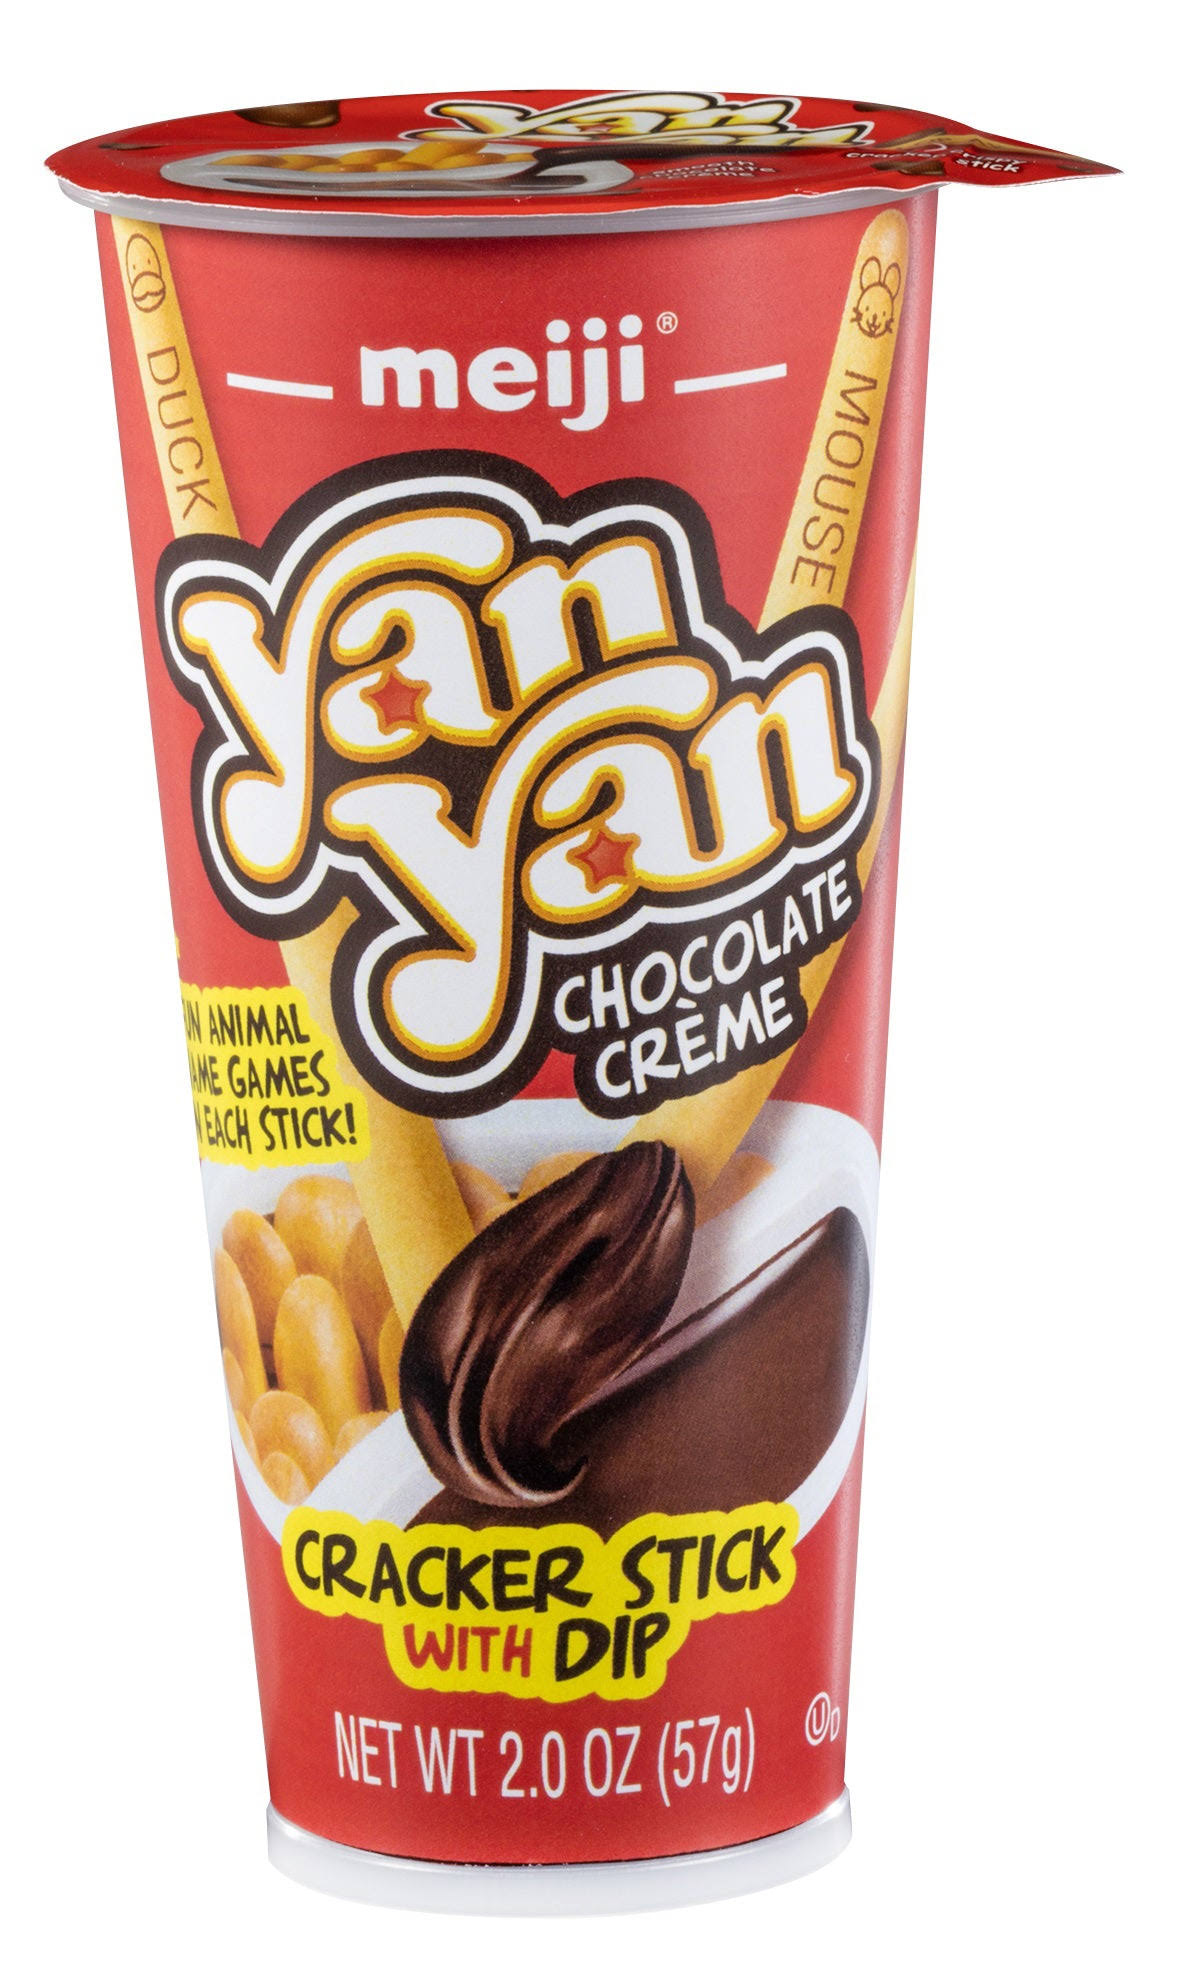 Meiji Yan Yan Chocolate Creme